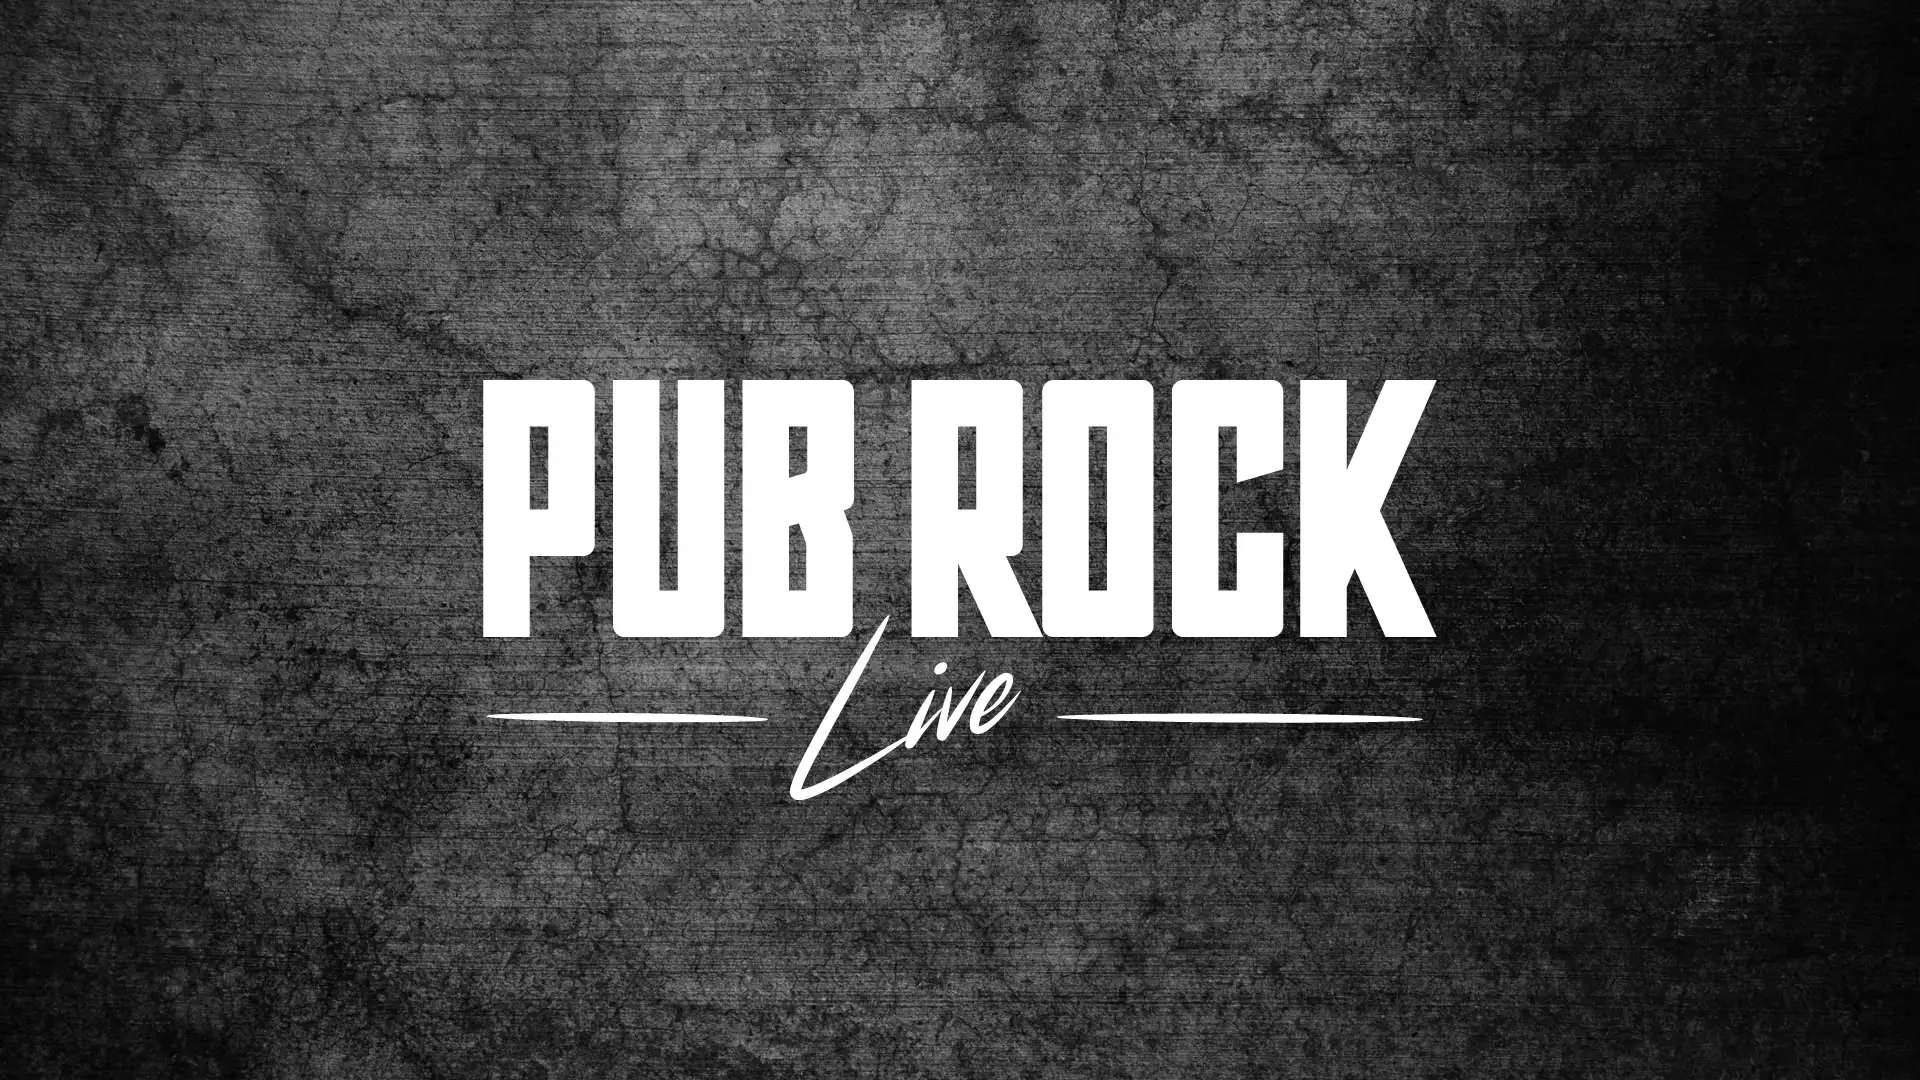 Pub Rock logo rebrand by Dusty Drake